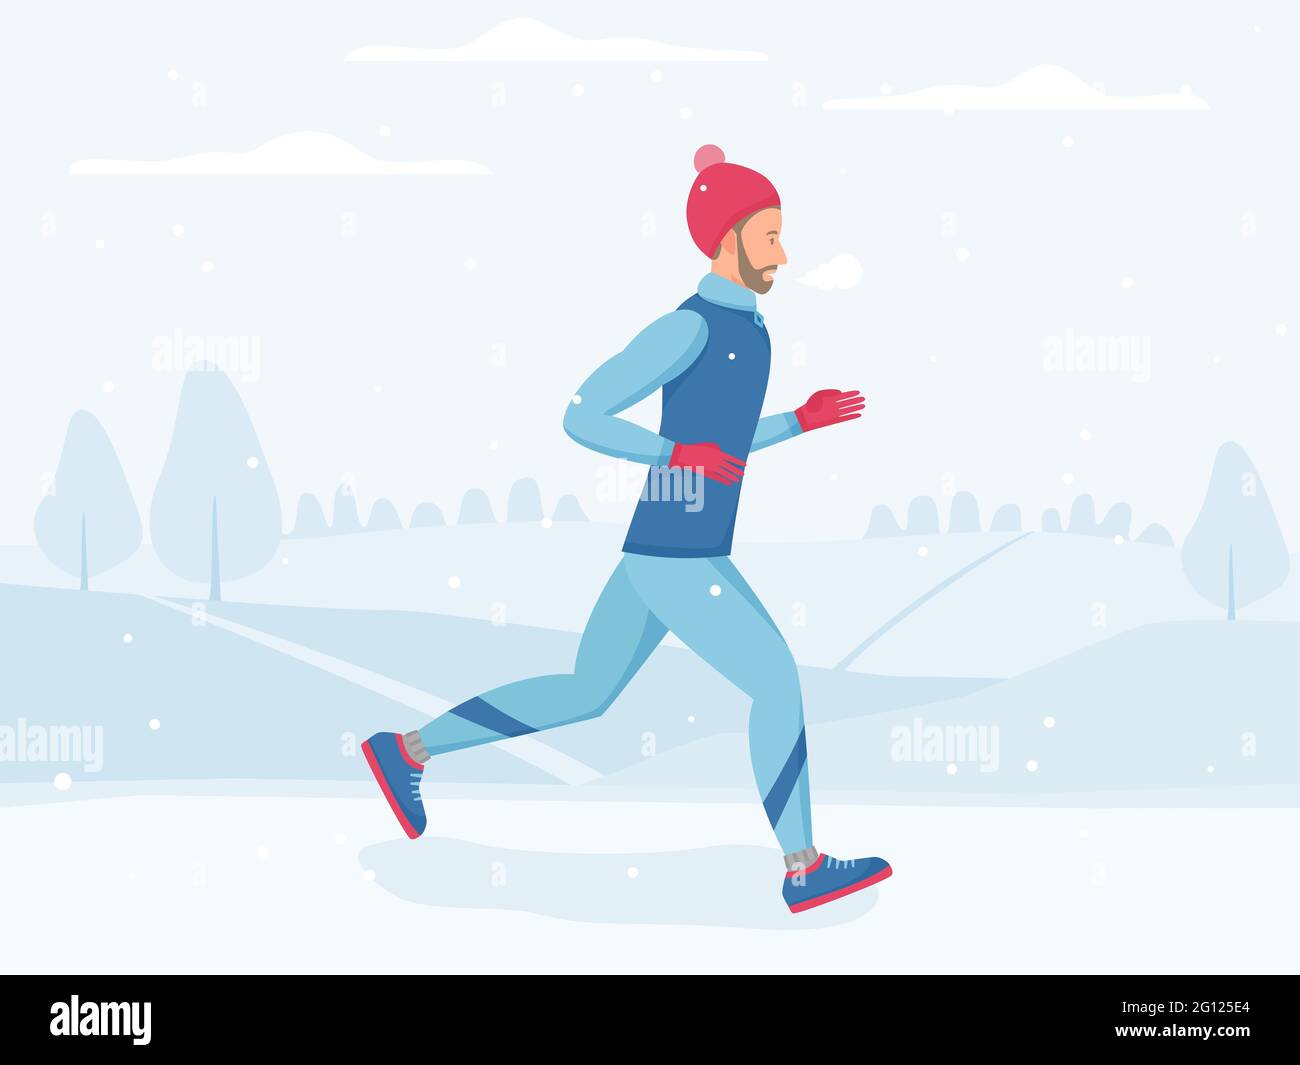 Mann läuft im Winterpark, joggt draußen bei kaltem Wetter, Sport und körperliche Aktivität im Freien bei eiskalter Kälte, Vektor-Illustration in flachem Stil Stock Vektor